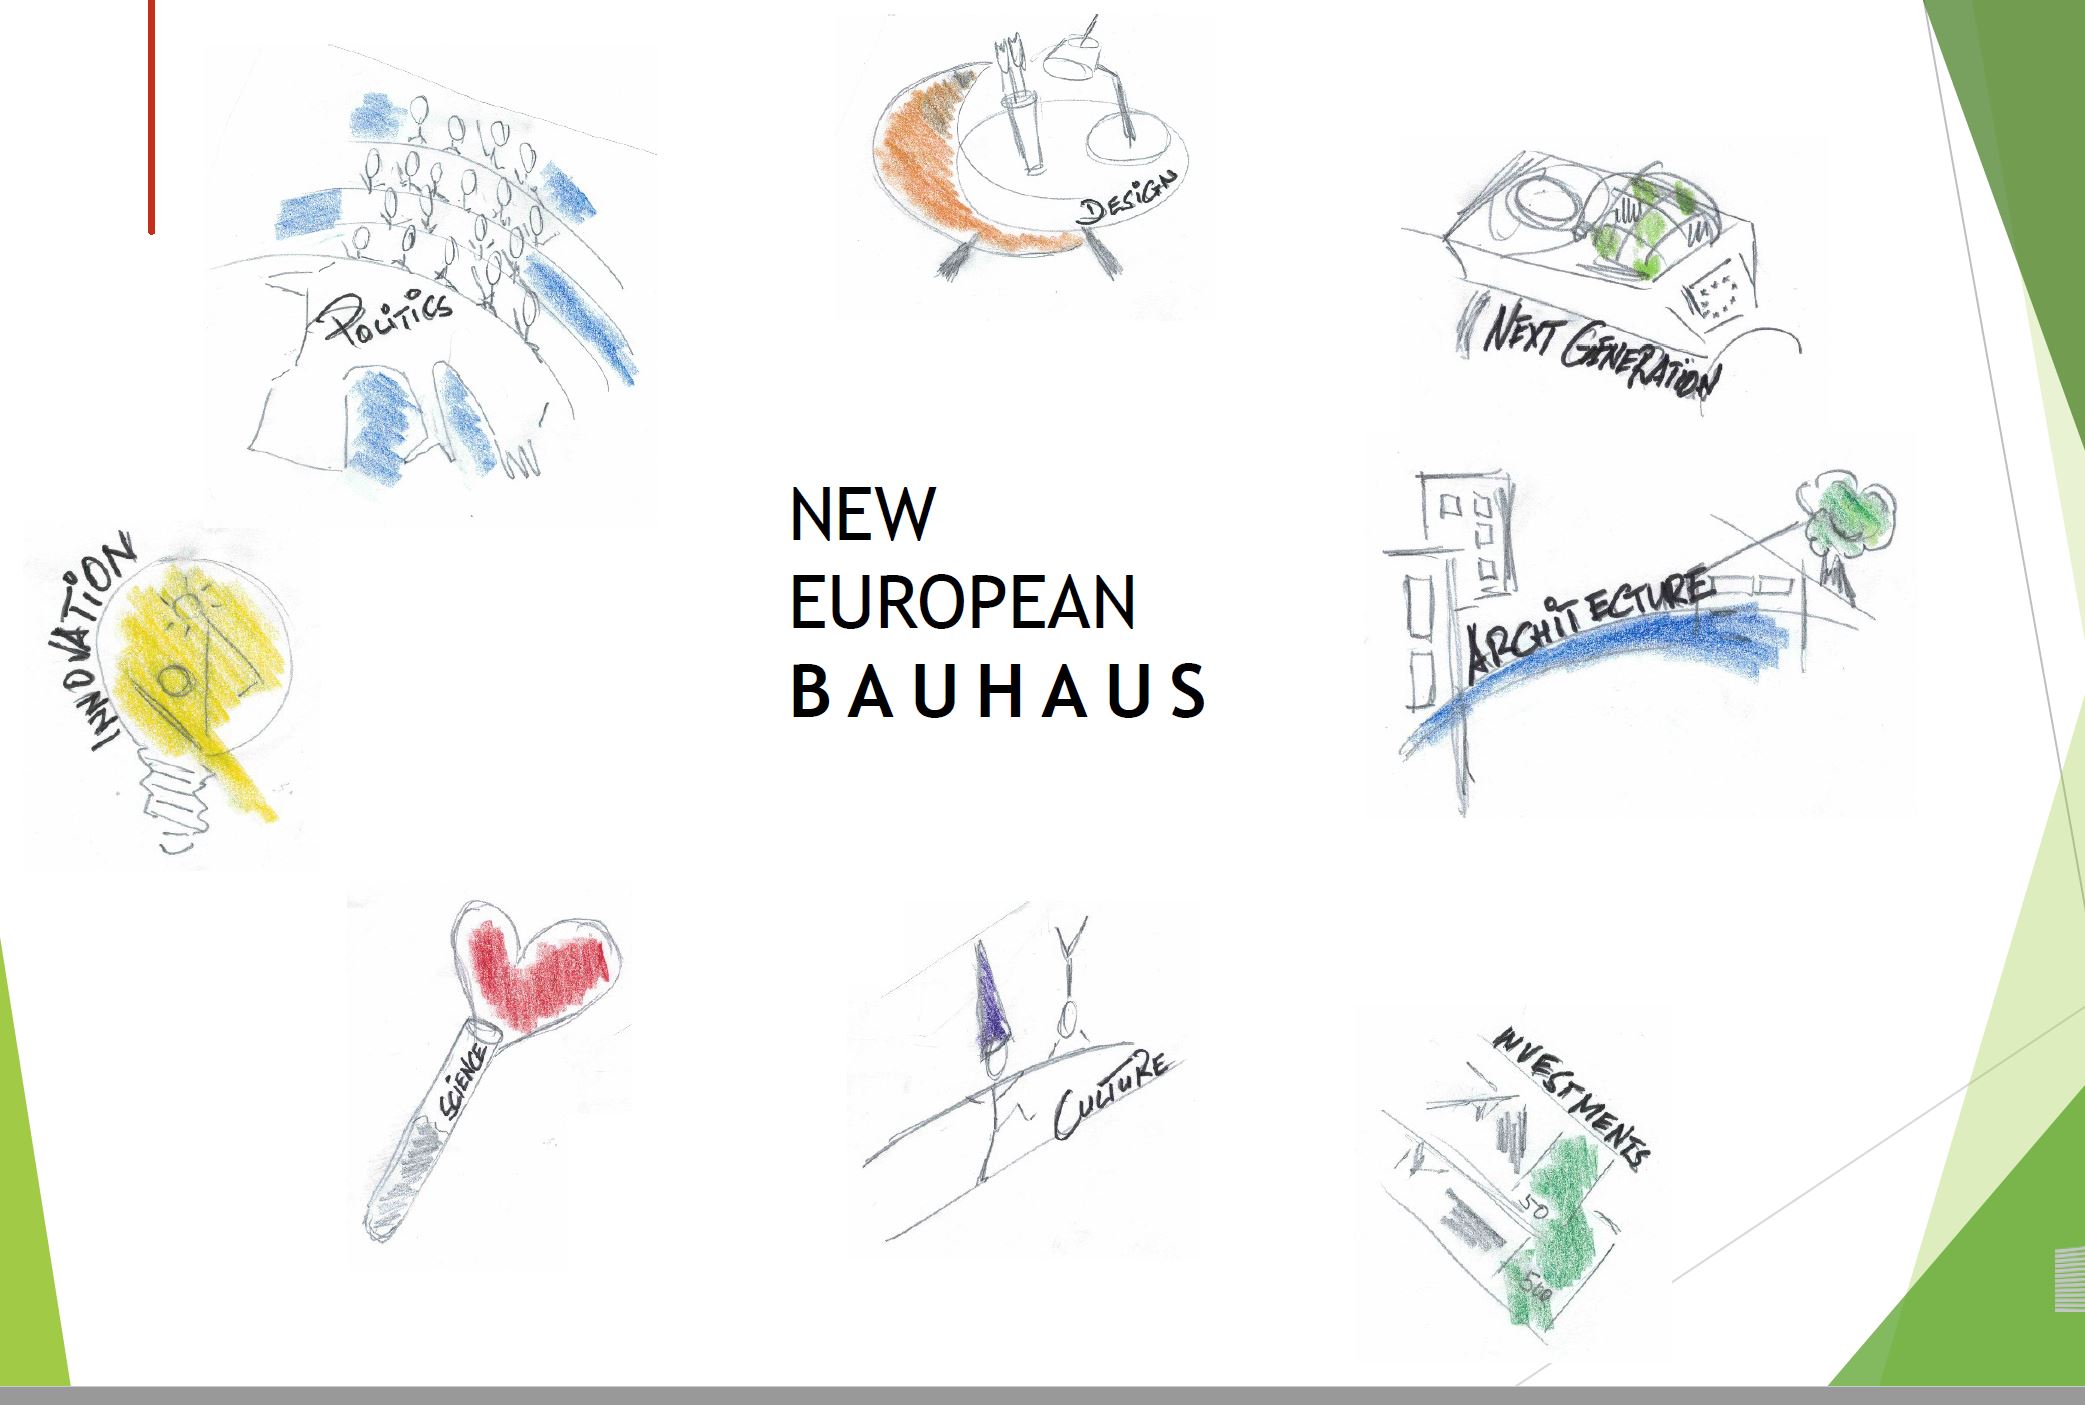 New European Bauhaus taking shape